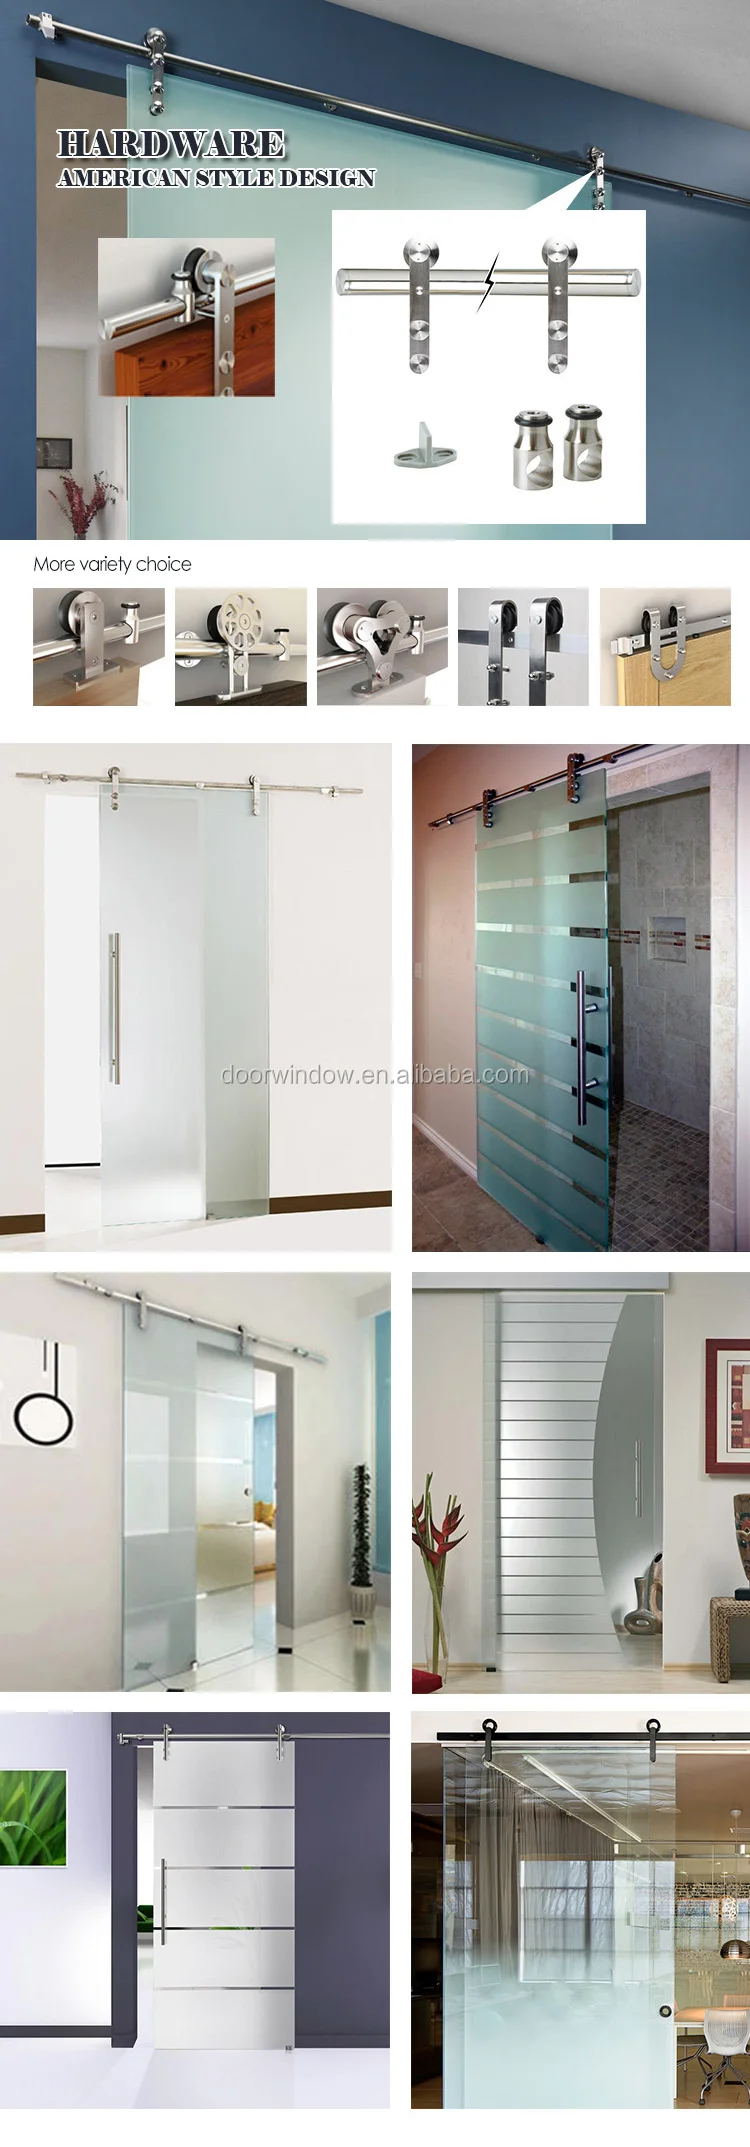 Expensive glass bathroom/room door waterproof designs photo sliding barn door with lifting wheel